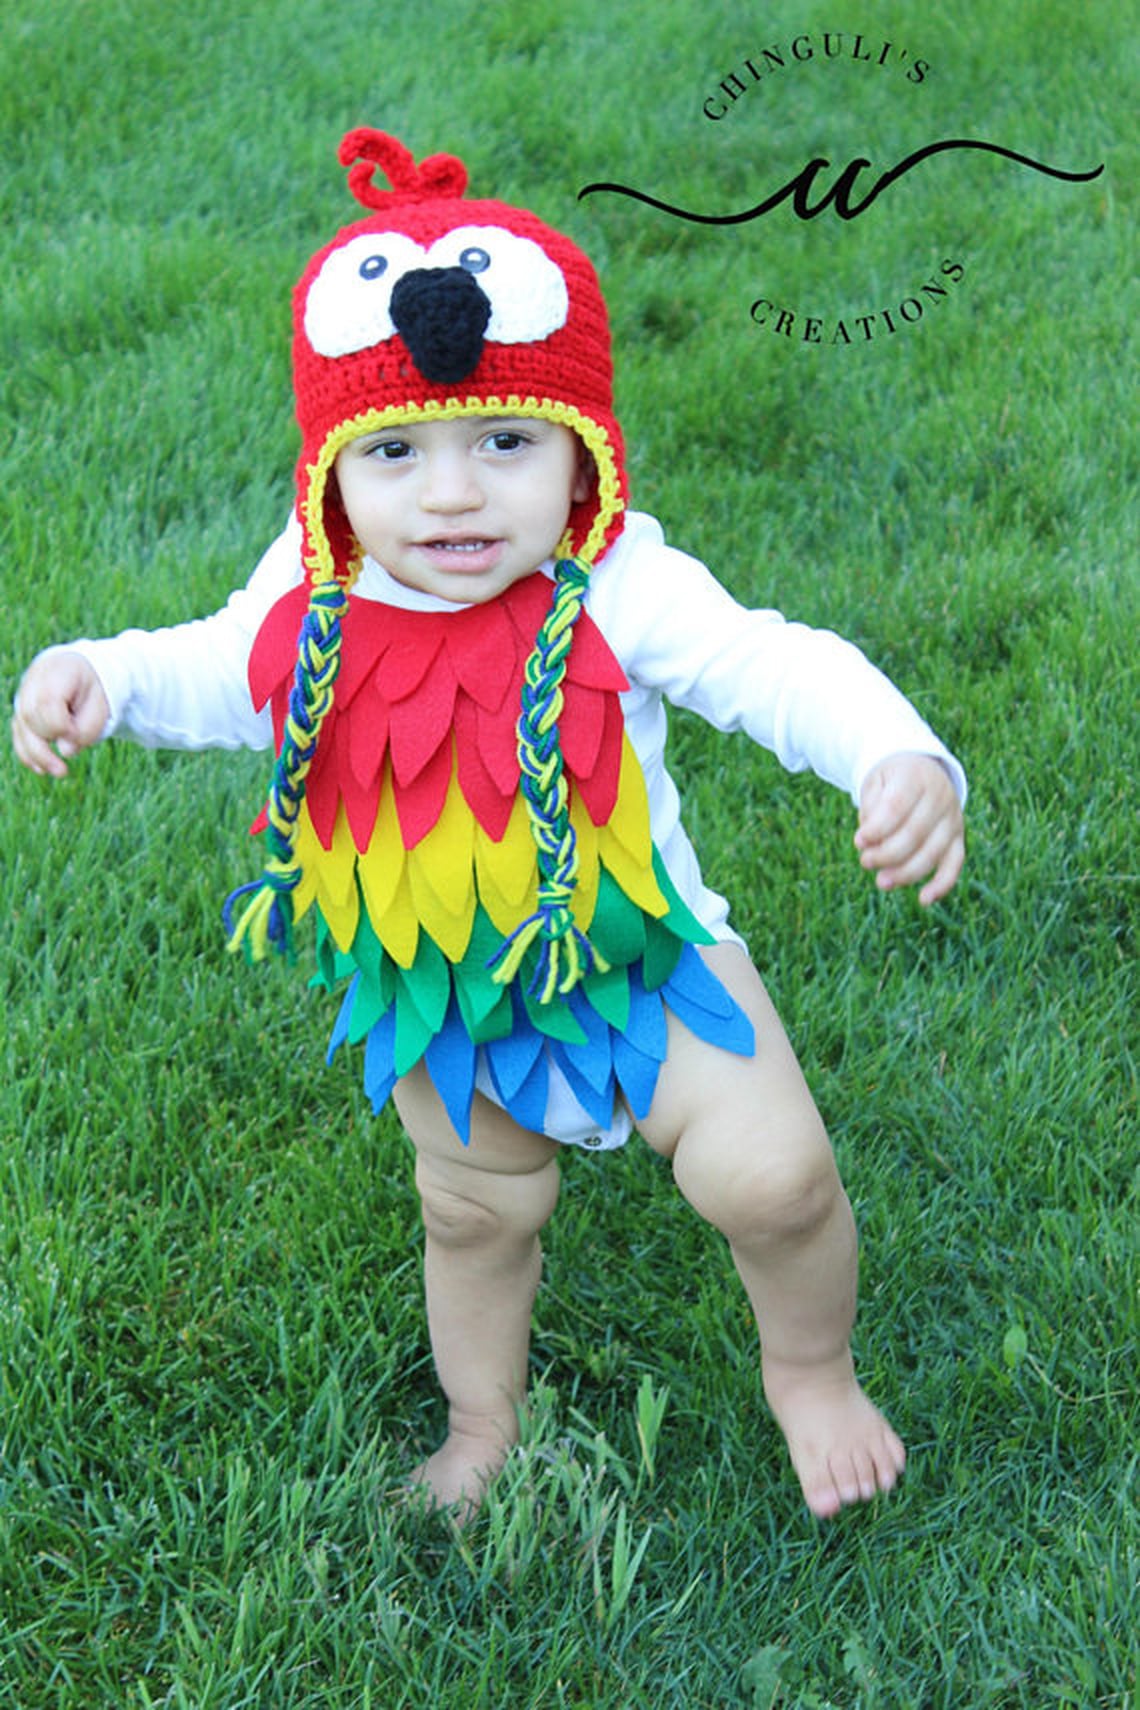 Best Handmade Halloween Costumes For Kids From Etsy | POPSUGAR Family